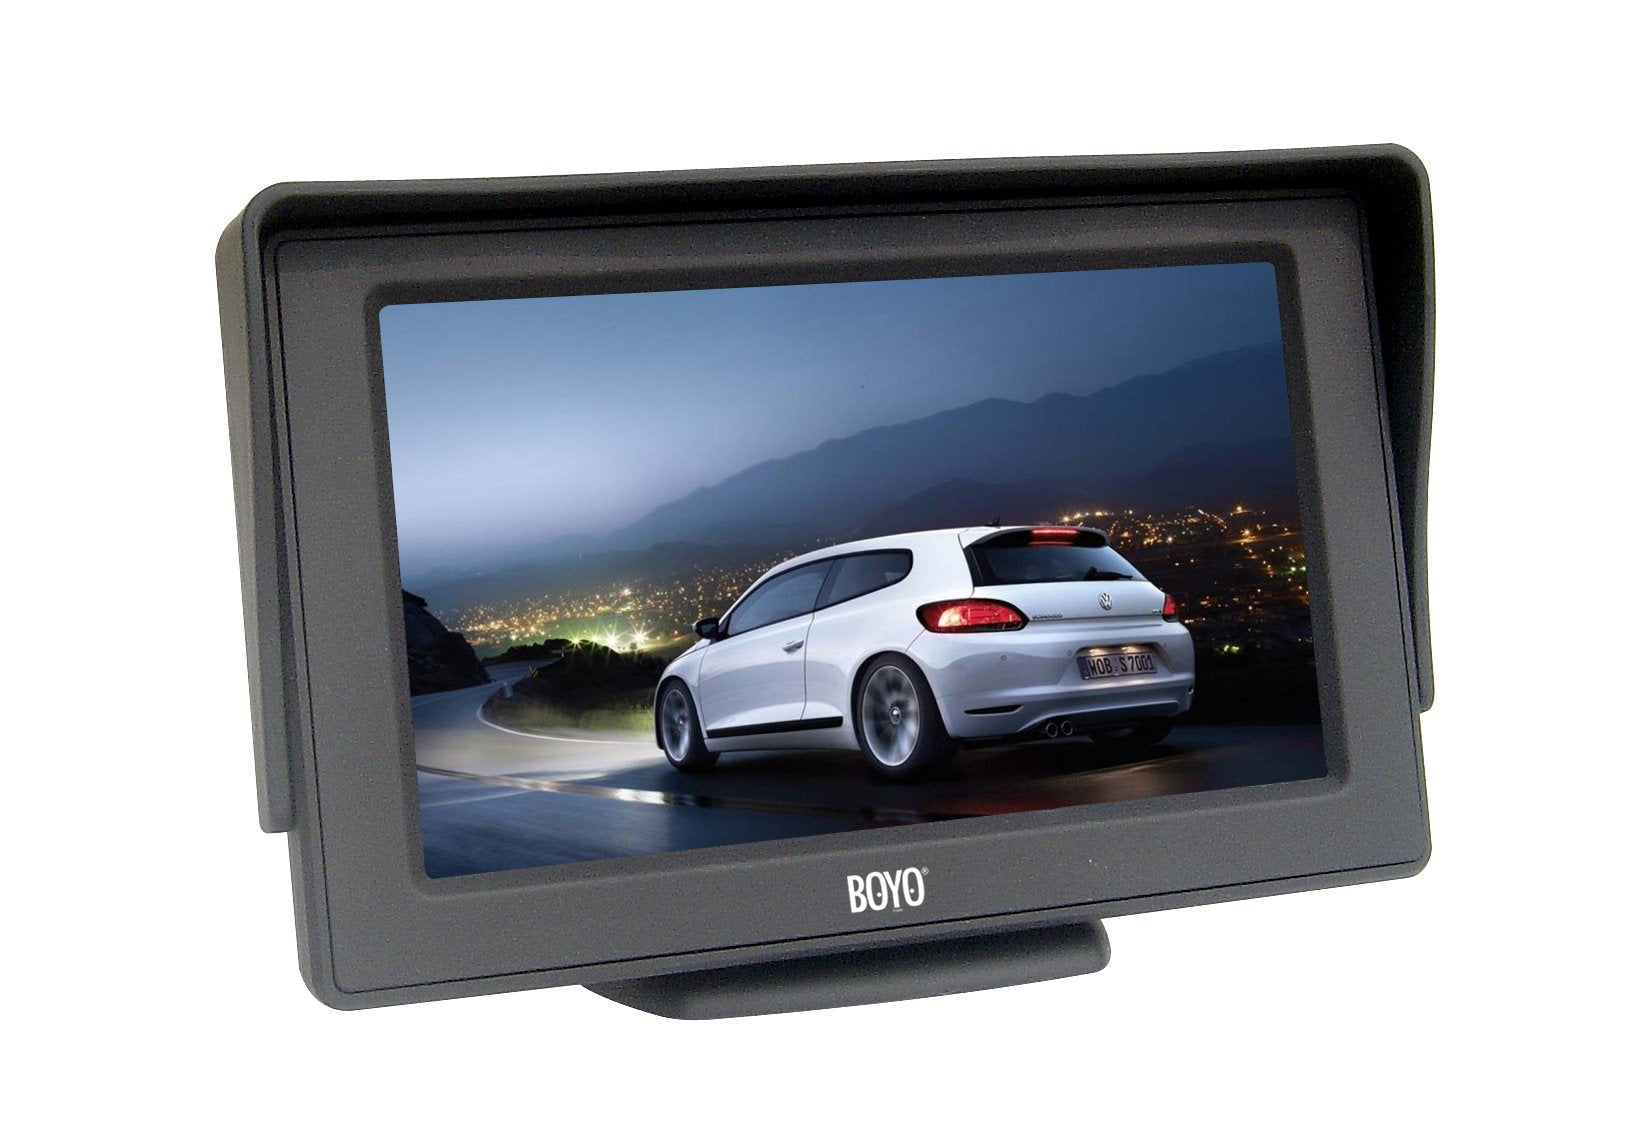 BOYO VTM4301 - 4.3" TFT-LCD Backup Camera Monitor